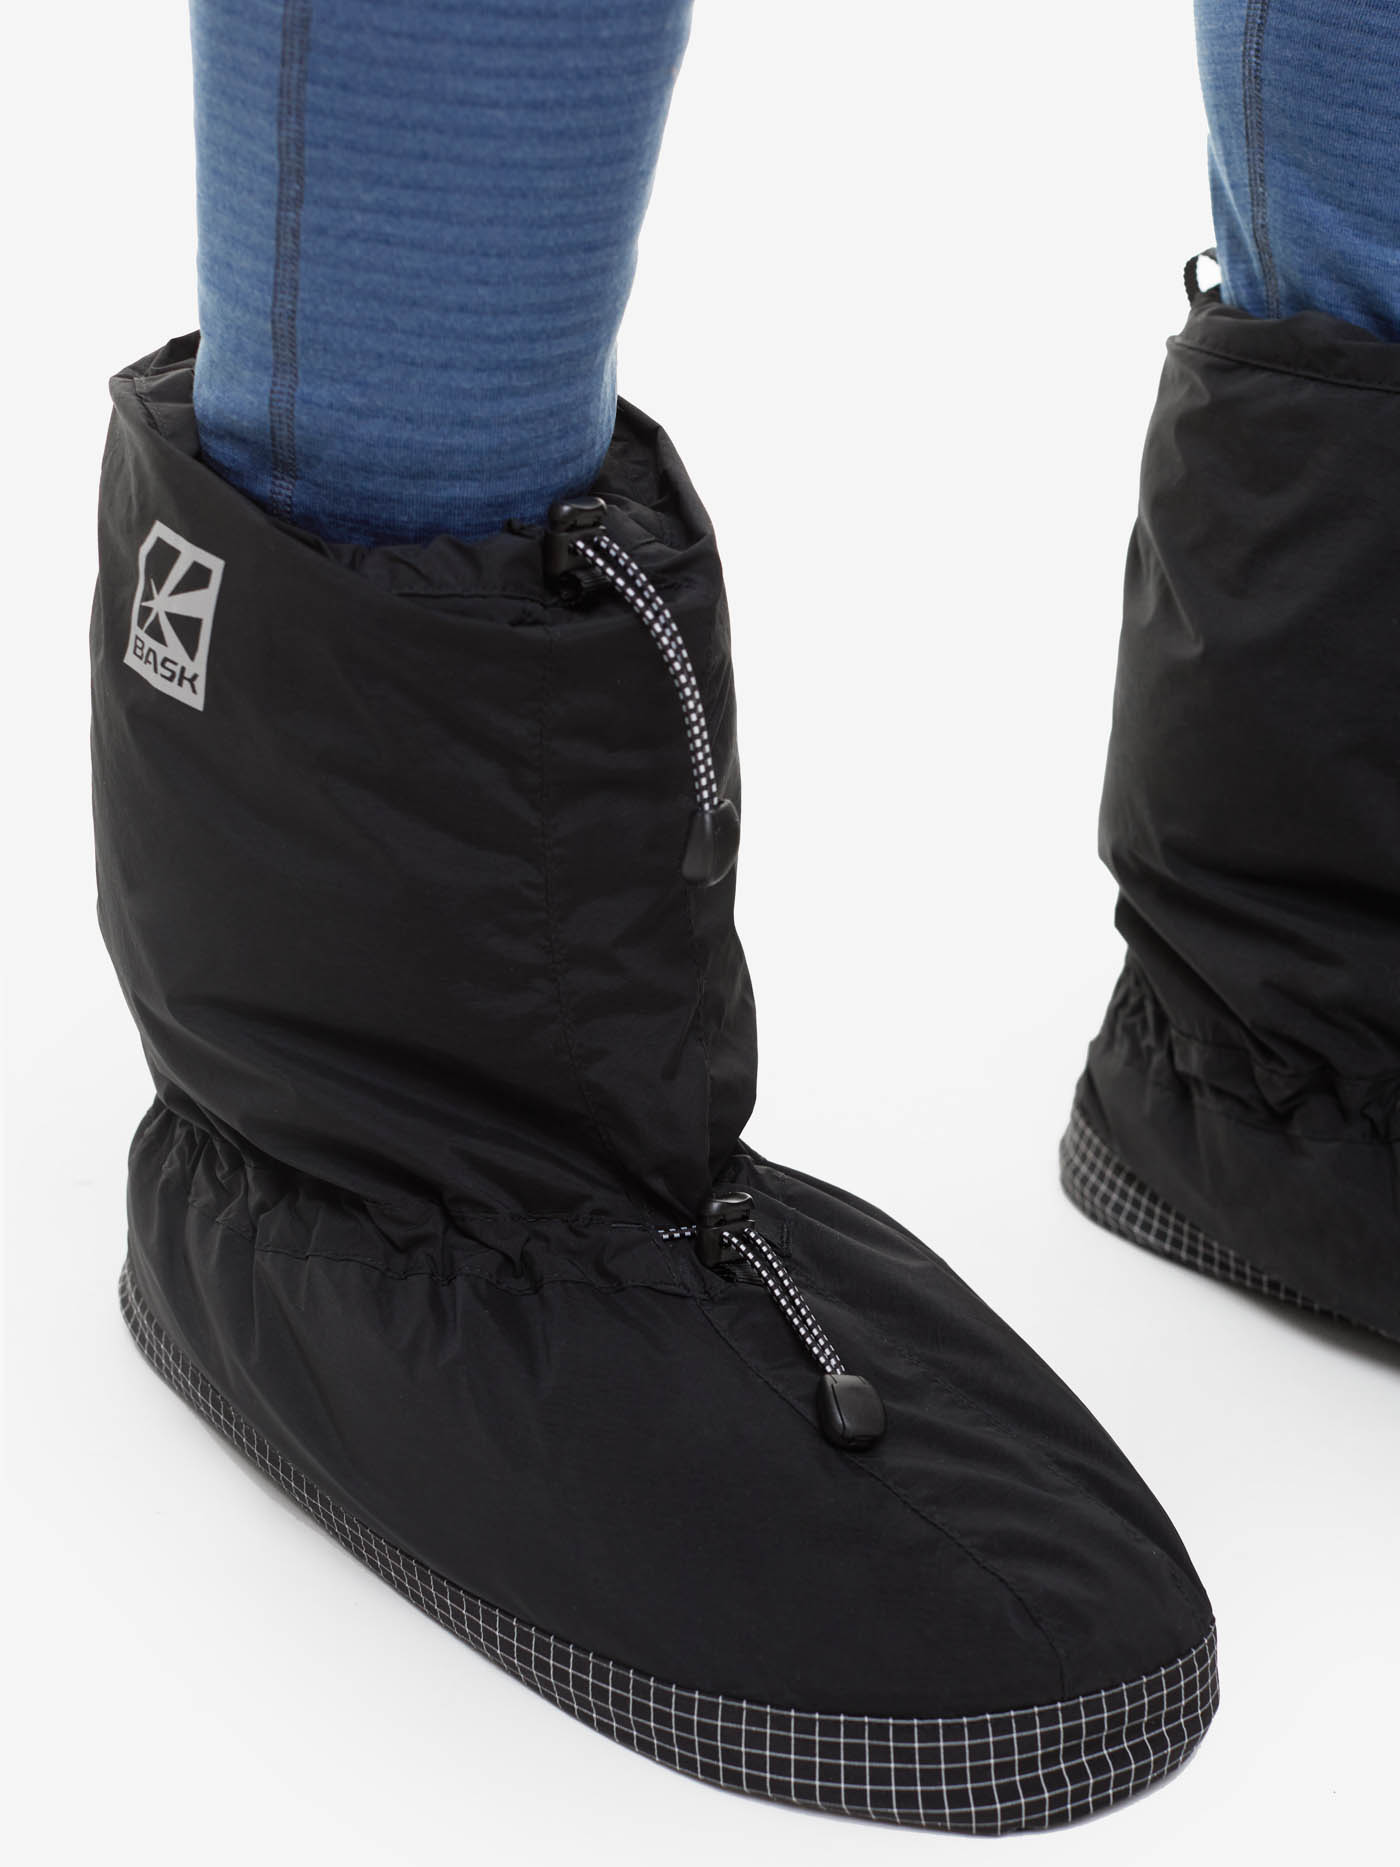 Носки BASK, размер S, цвет черный 21203-9009-S Tundra foot - фото 3